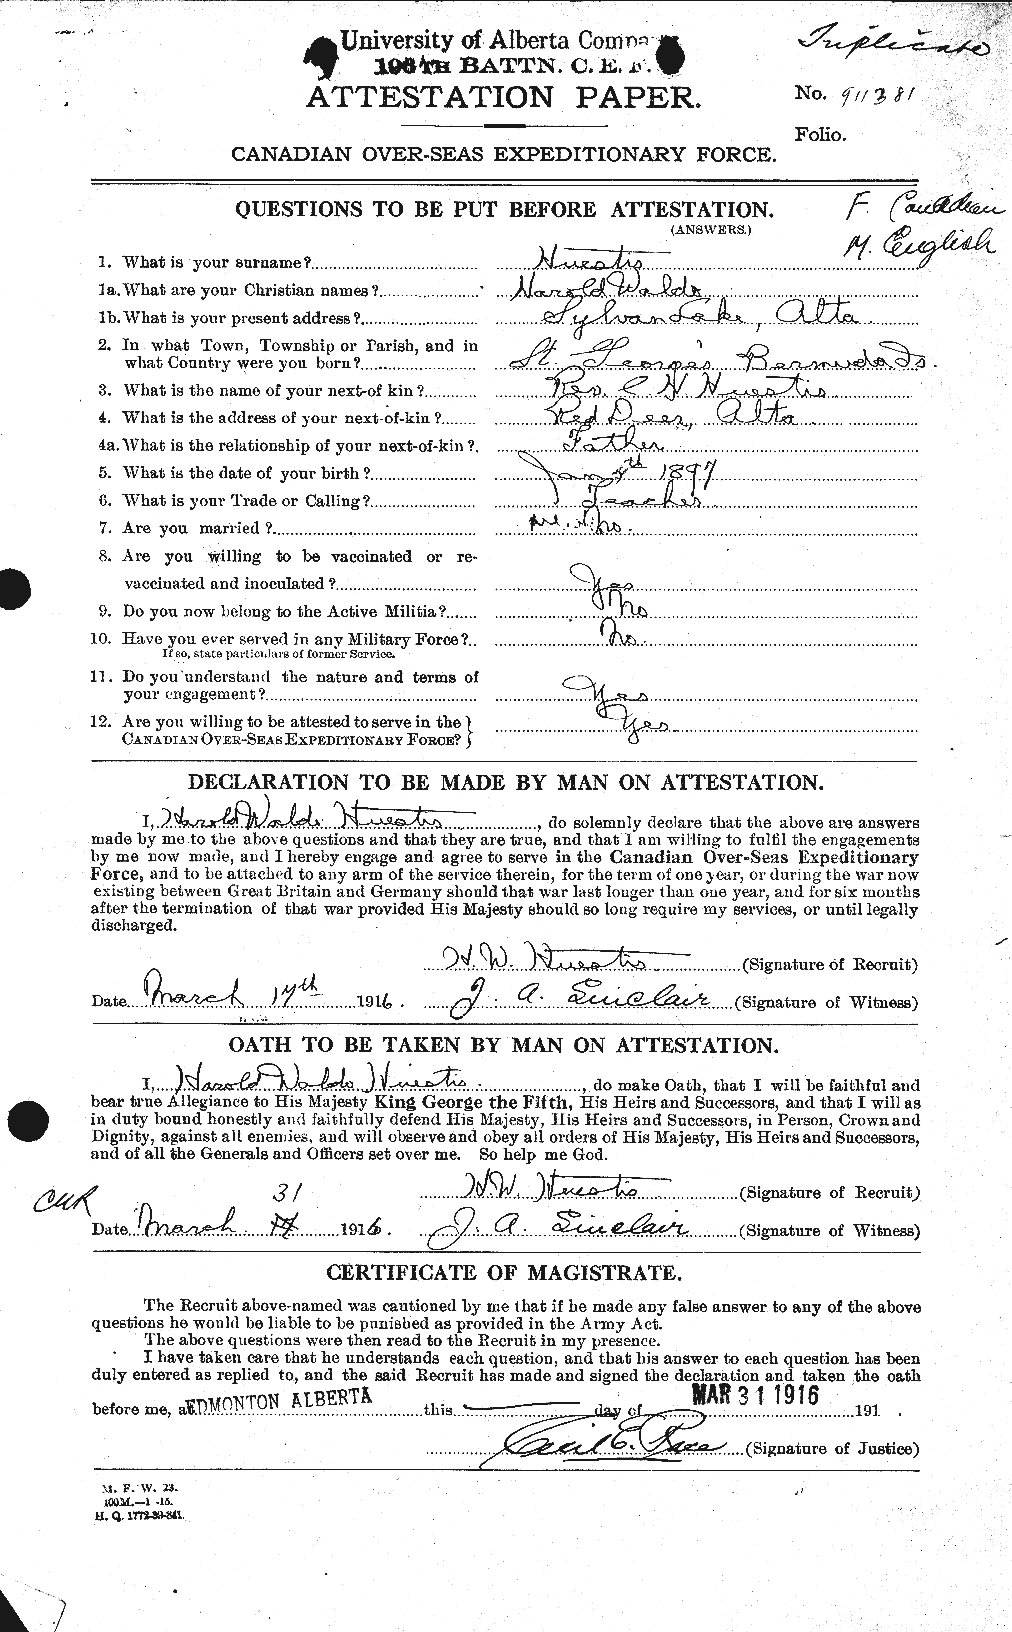 Dossiers du Personnel de la Première Guerre mondiale - CEC 399173a